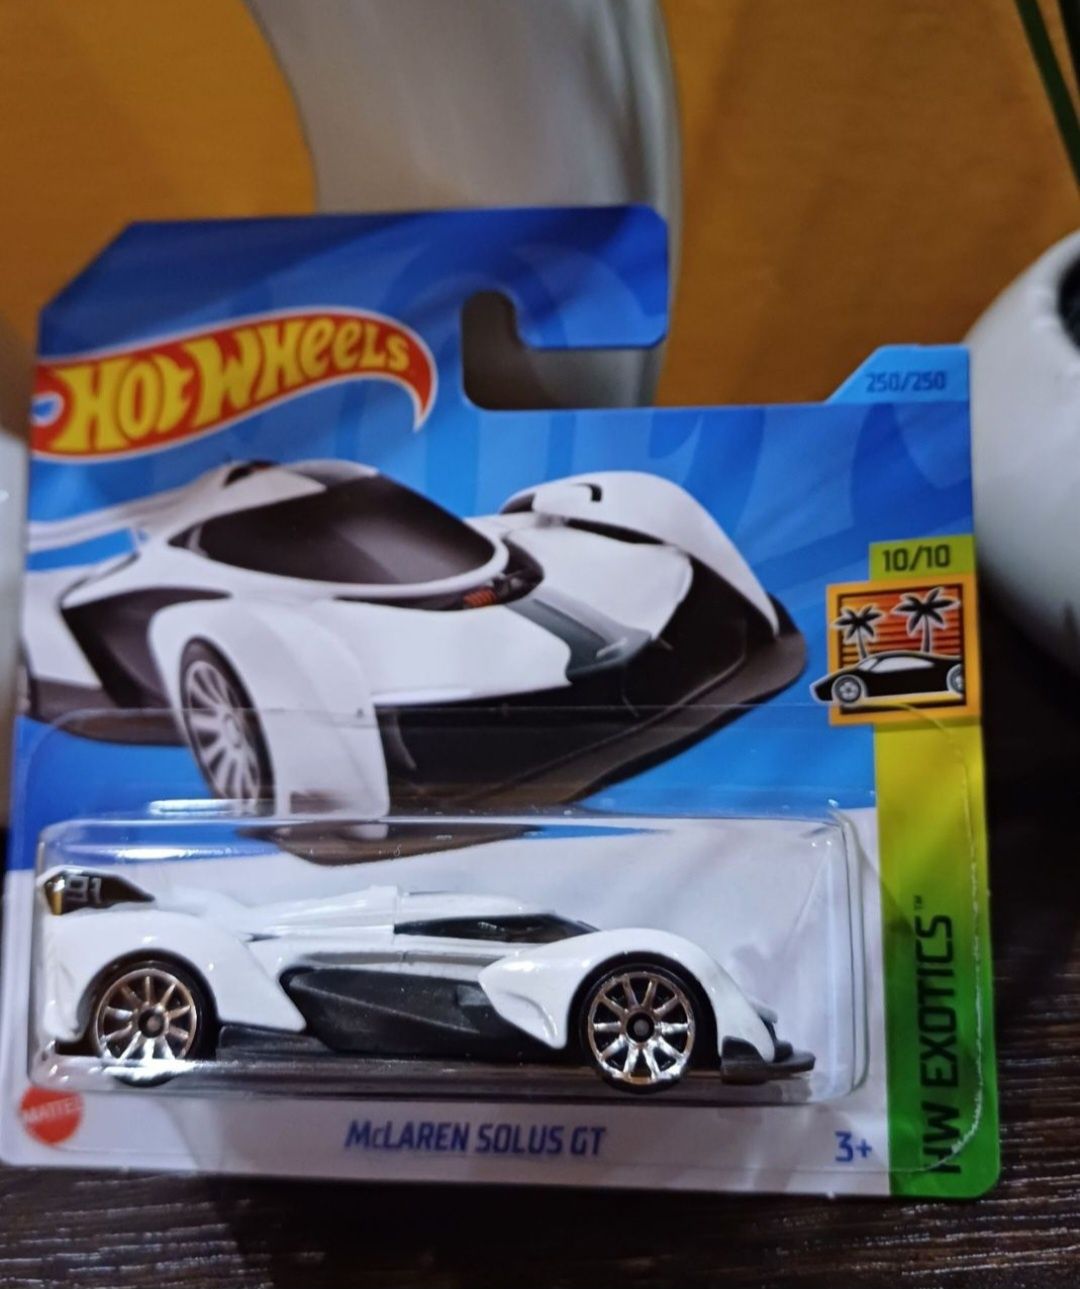 Hot Wheels McLaren Solus GT